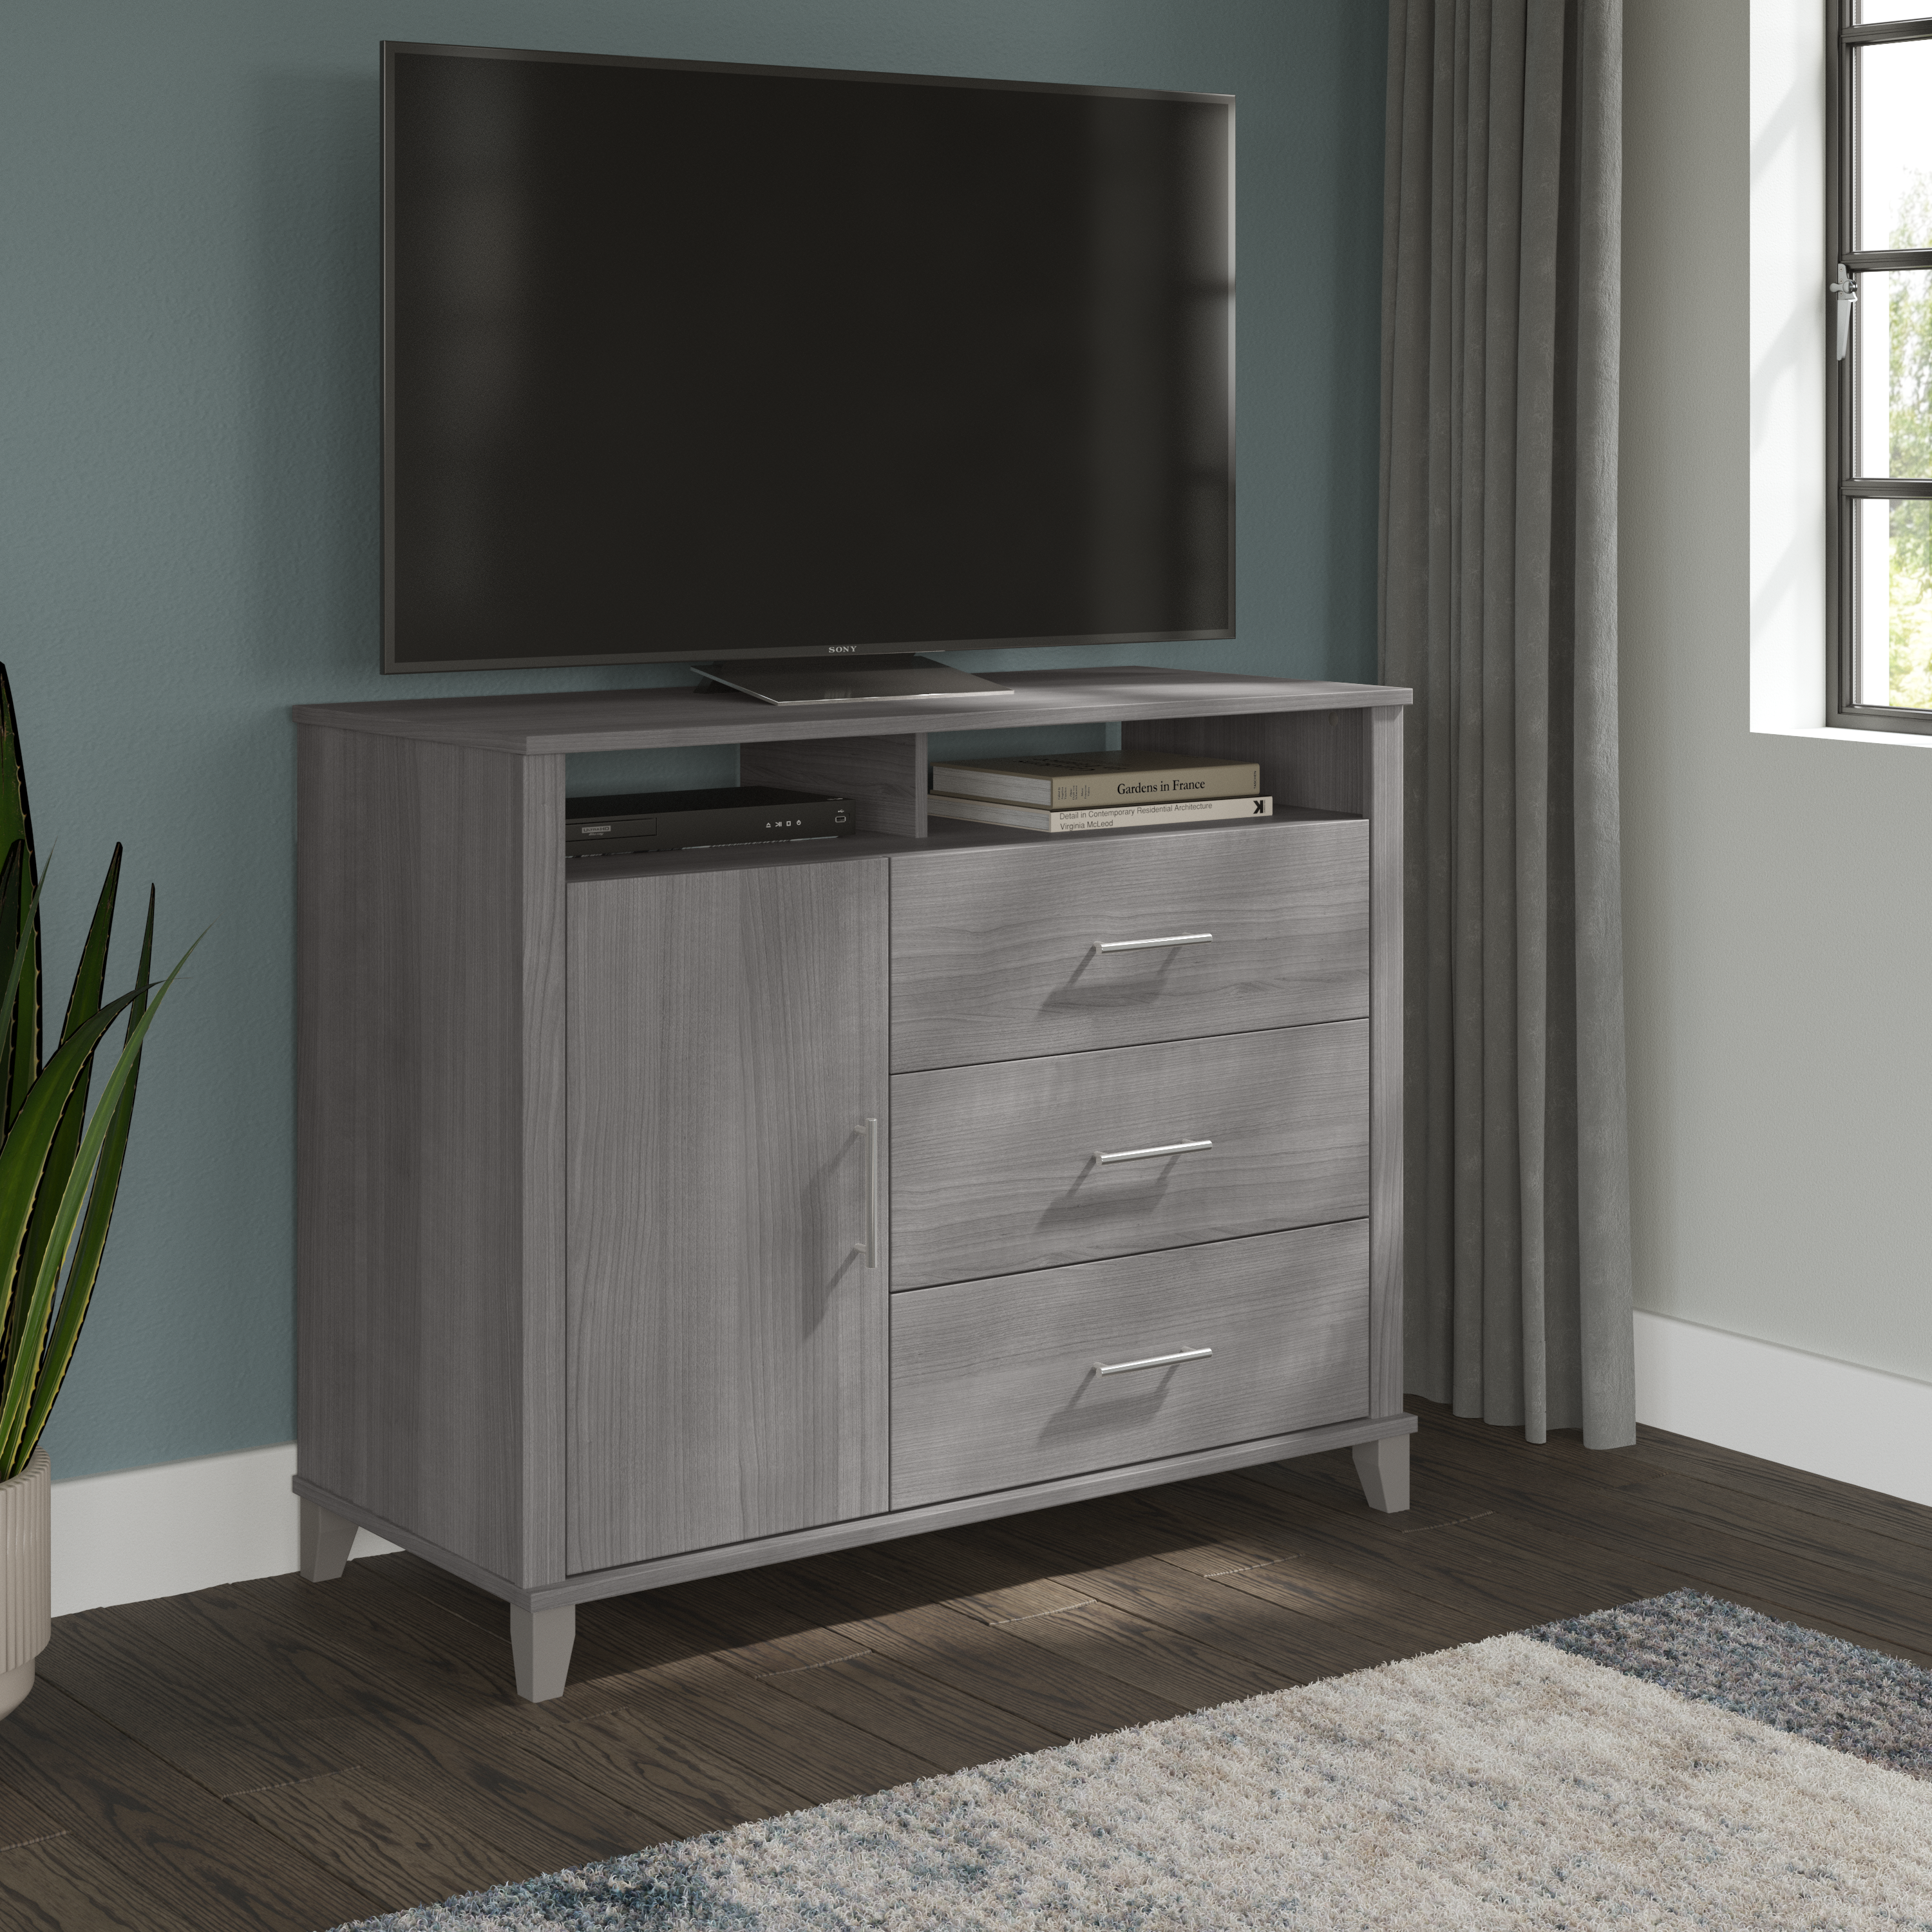 Shop Bush Furniture Somerset 3 Drawer Dresser and Bedroom TV Stand 01 STV148PGK #color_platinum gray